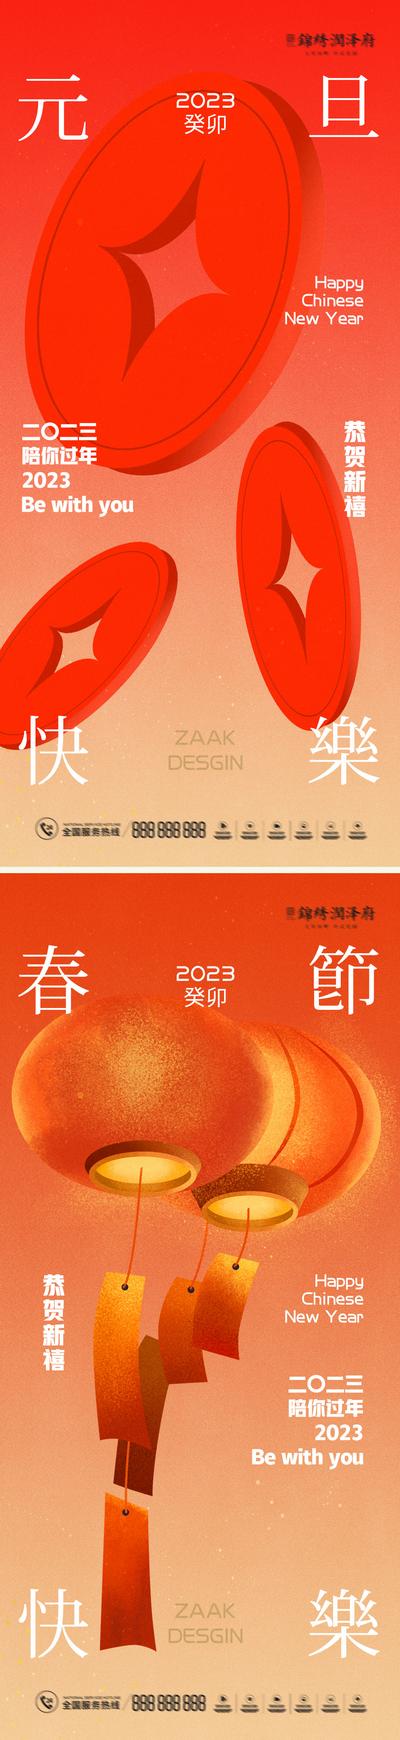 南门网 2023兔年新春元旦系列海报